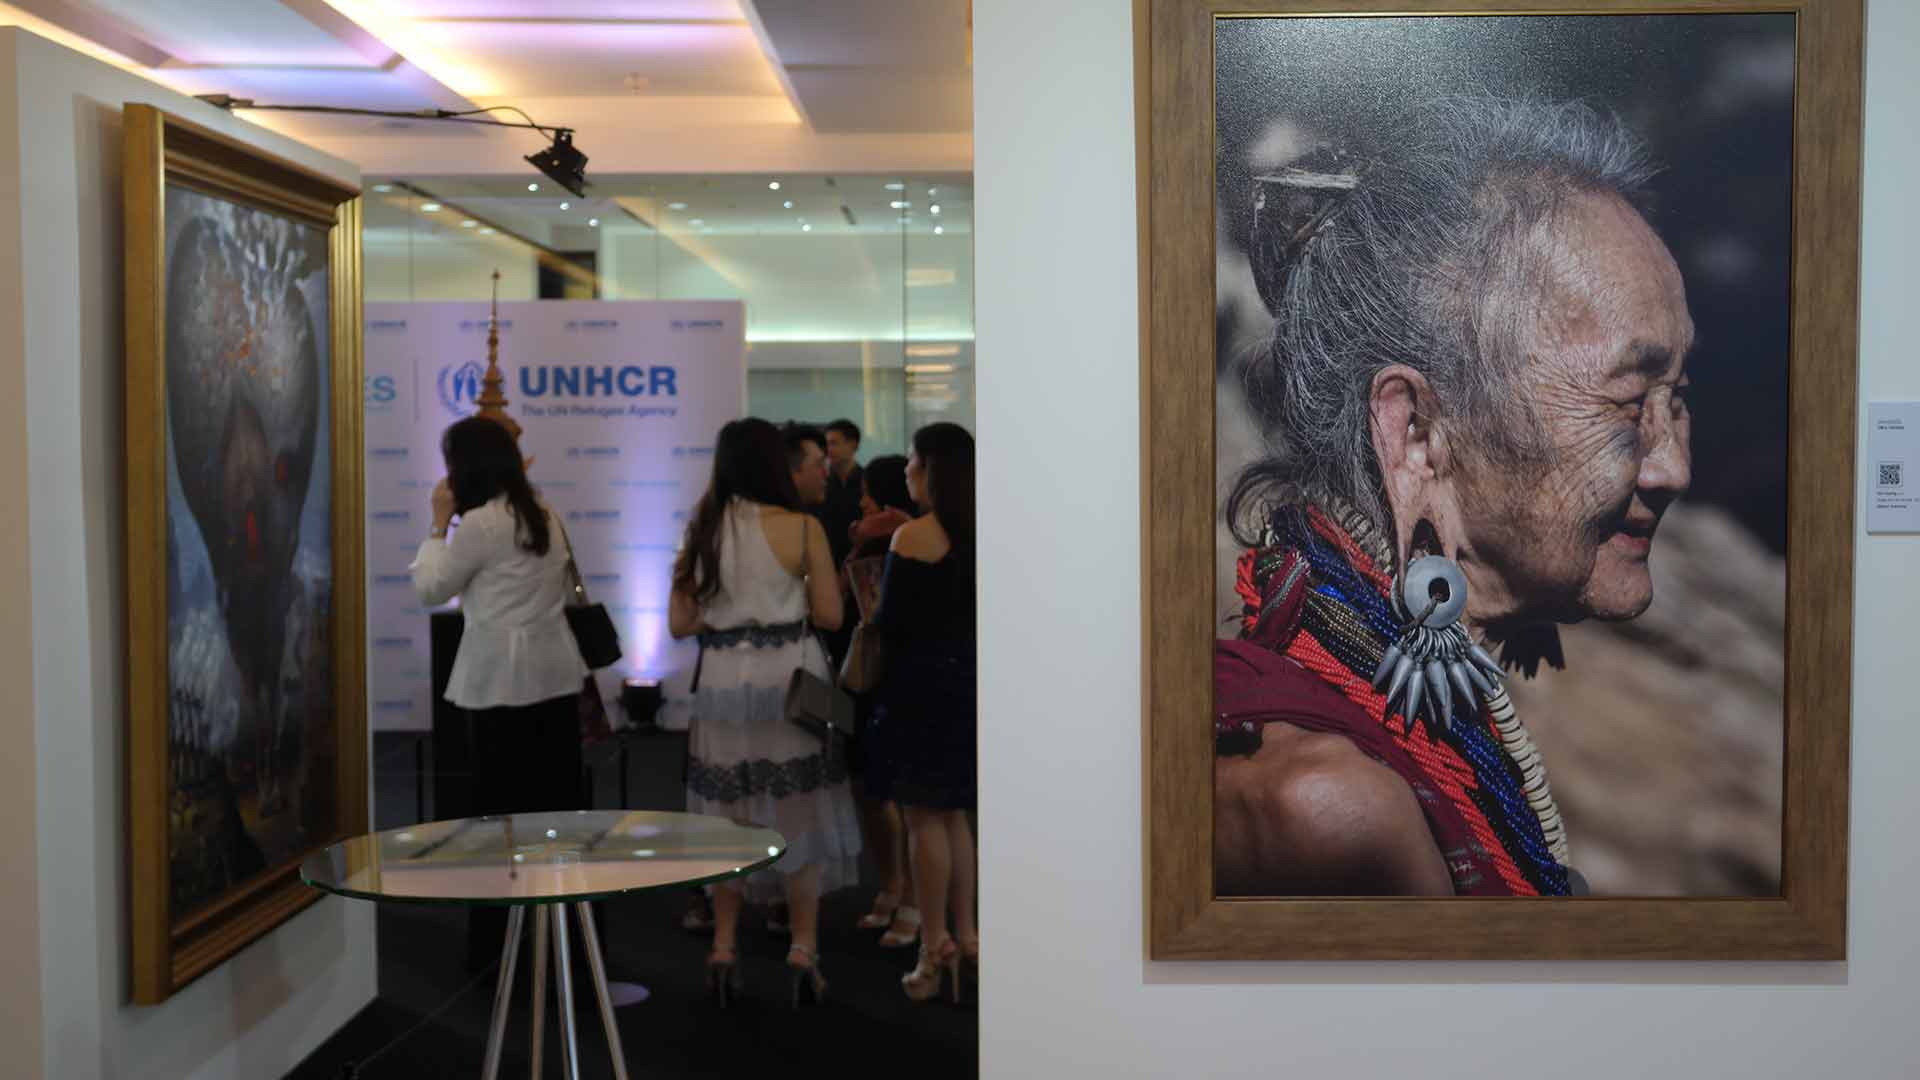 Exhibition Art Auction for Refugees by UNHCR and Venerable Vudhijaya Vajiramedhi | นิทรรศการ งานประมูลศิลปกรรมเพื่อผู้ลี้ภัย โดย สำนักงานข้าหลวงใหญ่ผู้ลี้ภัยแห่งสหประชาชาติร่วมกับท่าน ว.วชิรเมธี